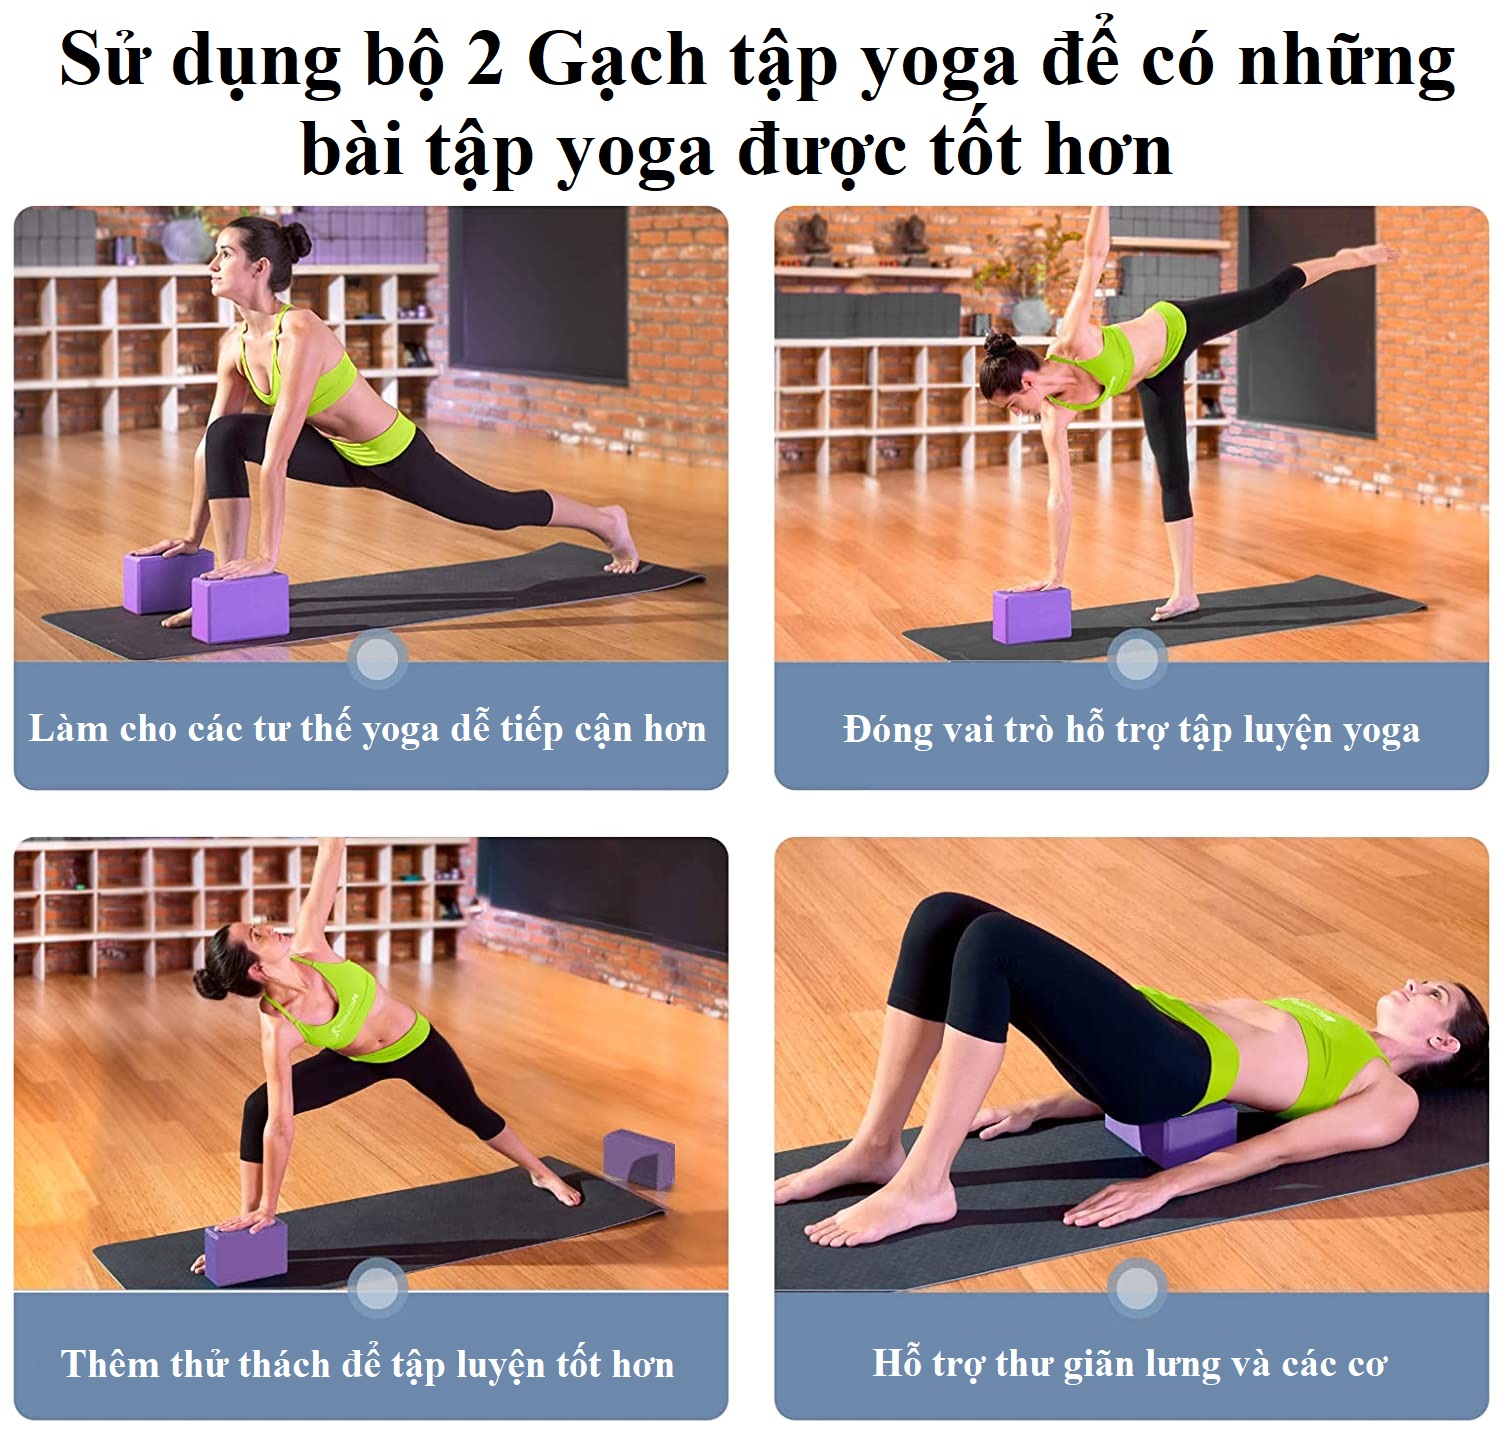 Gối Gạch Tập Yoga Chọn Màu Chất Liệu EVA Mật Độ Cao Nặng 185 Gram Chính Hãng Dododios – Gối Tập Yoga Tập Gym Tập Thể Thao Cao Cấp